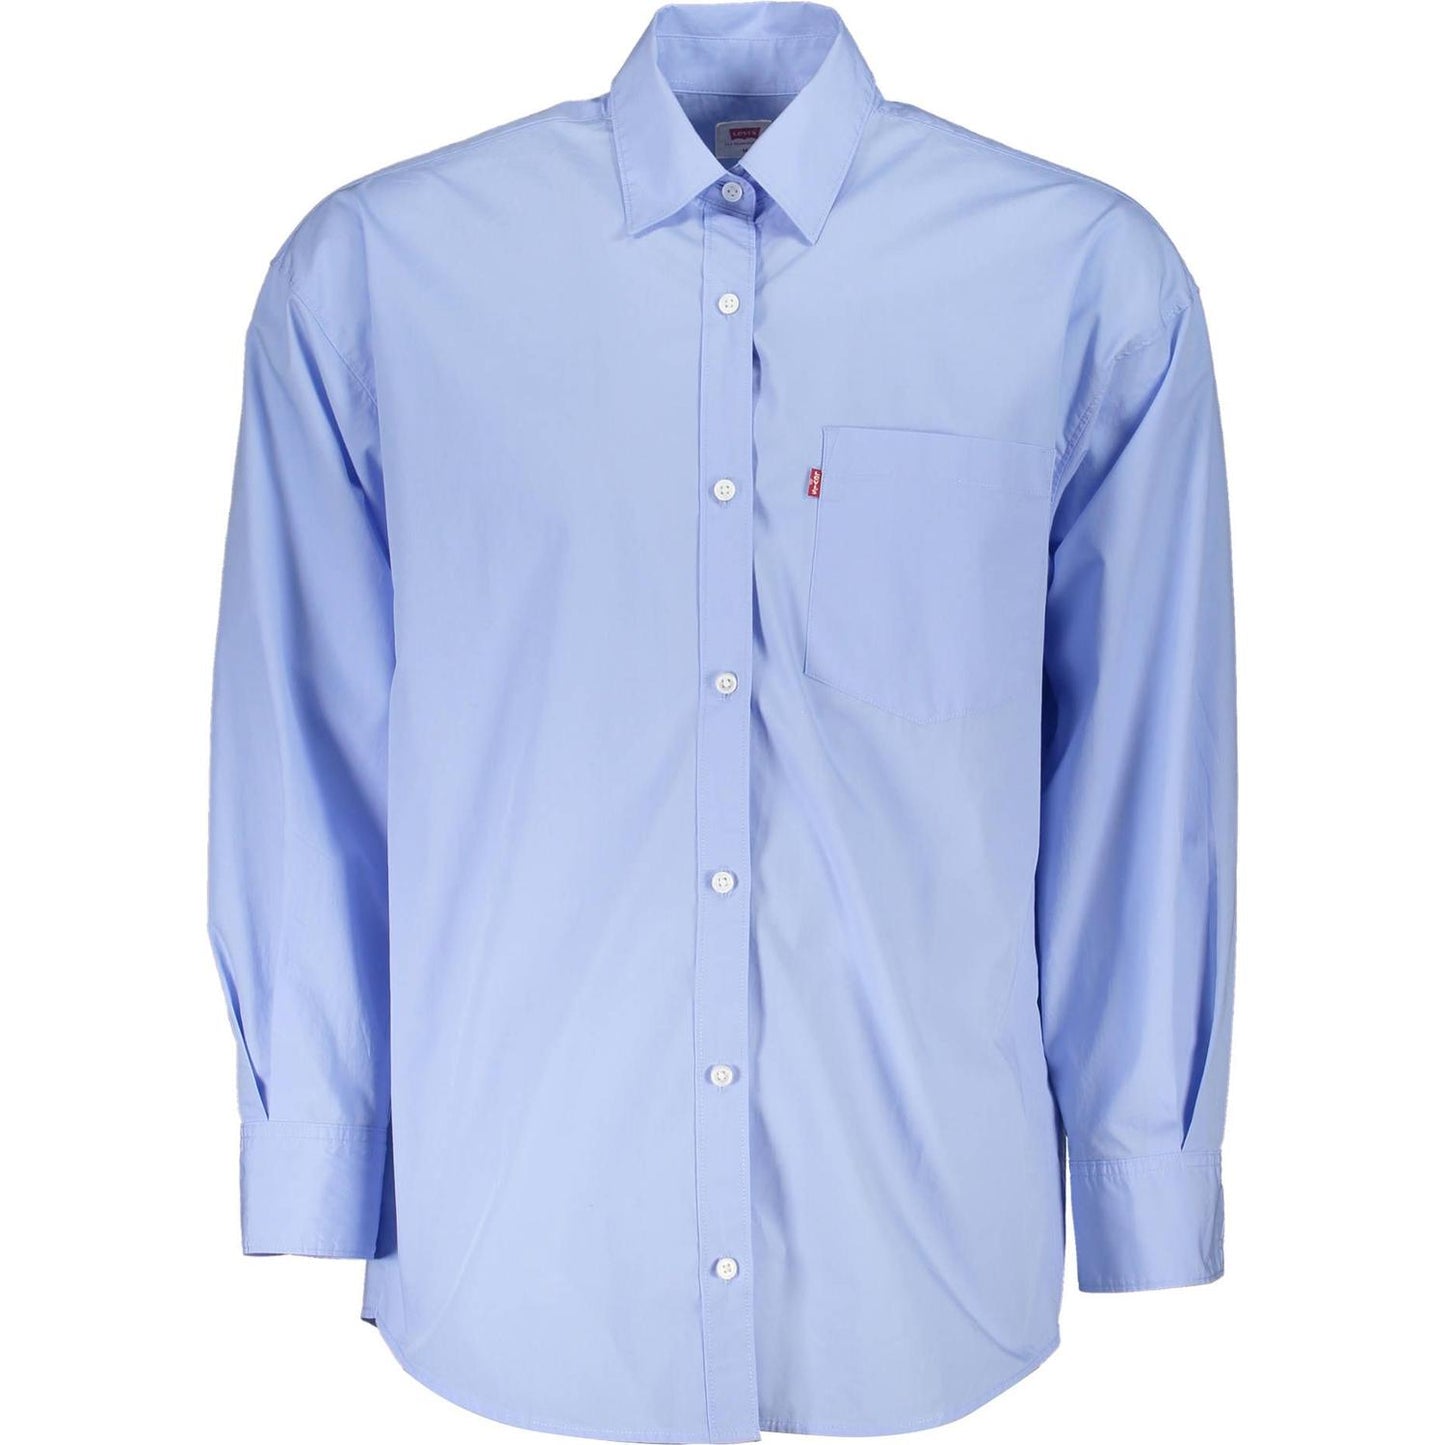 Levi's Elegant Light Blue Long-Sleeved Shirt elegant-light-blue-long-sleeved-shirt